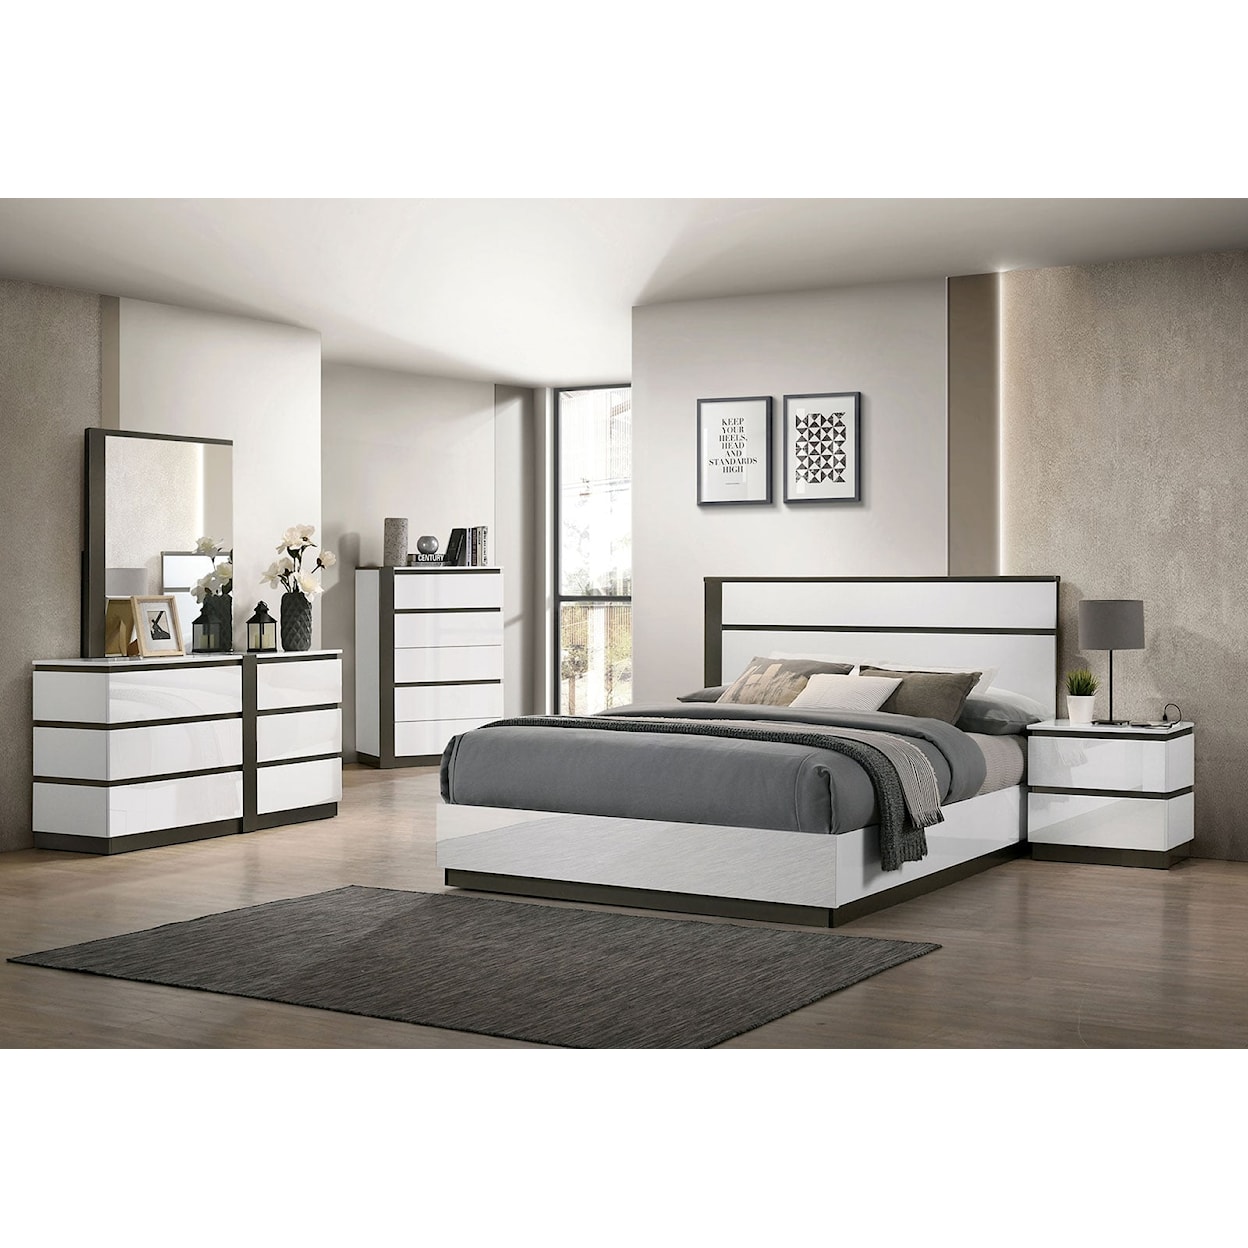 Furniture of America Birsfelden 5-Piece Queen Bedroom Set